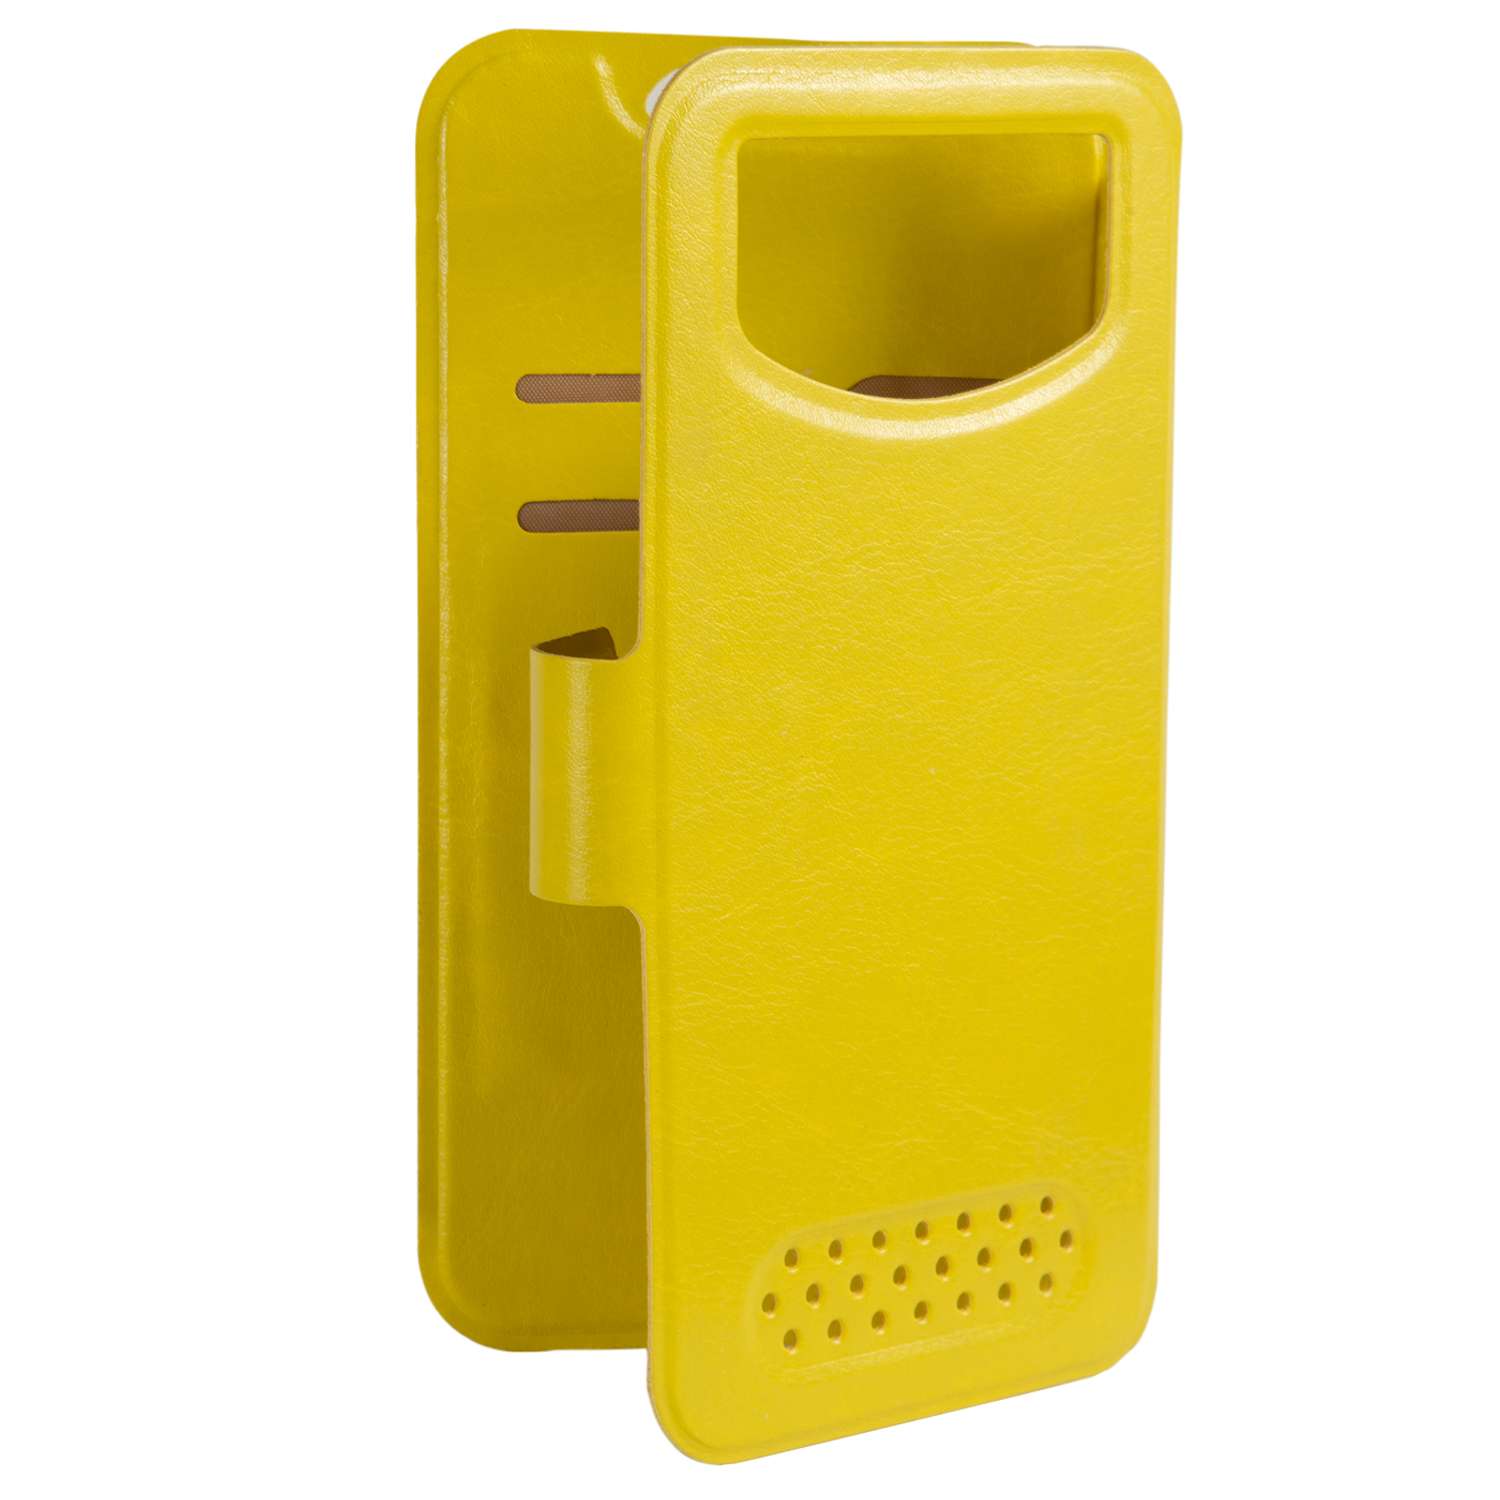 Чехол универсальный iBox Universal для телефонов 4.2-5 дюйма желтый - фото 4